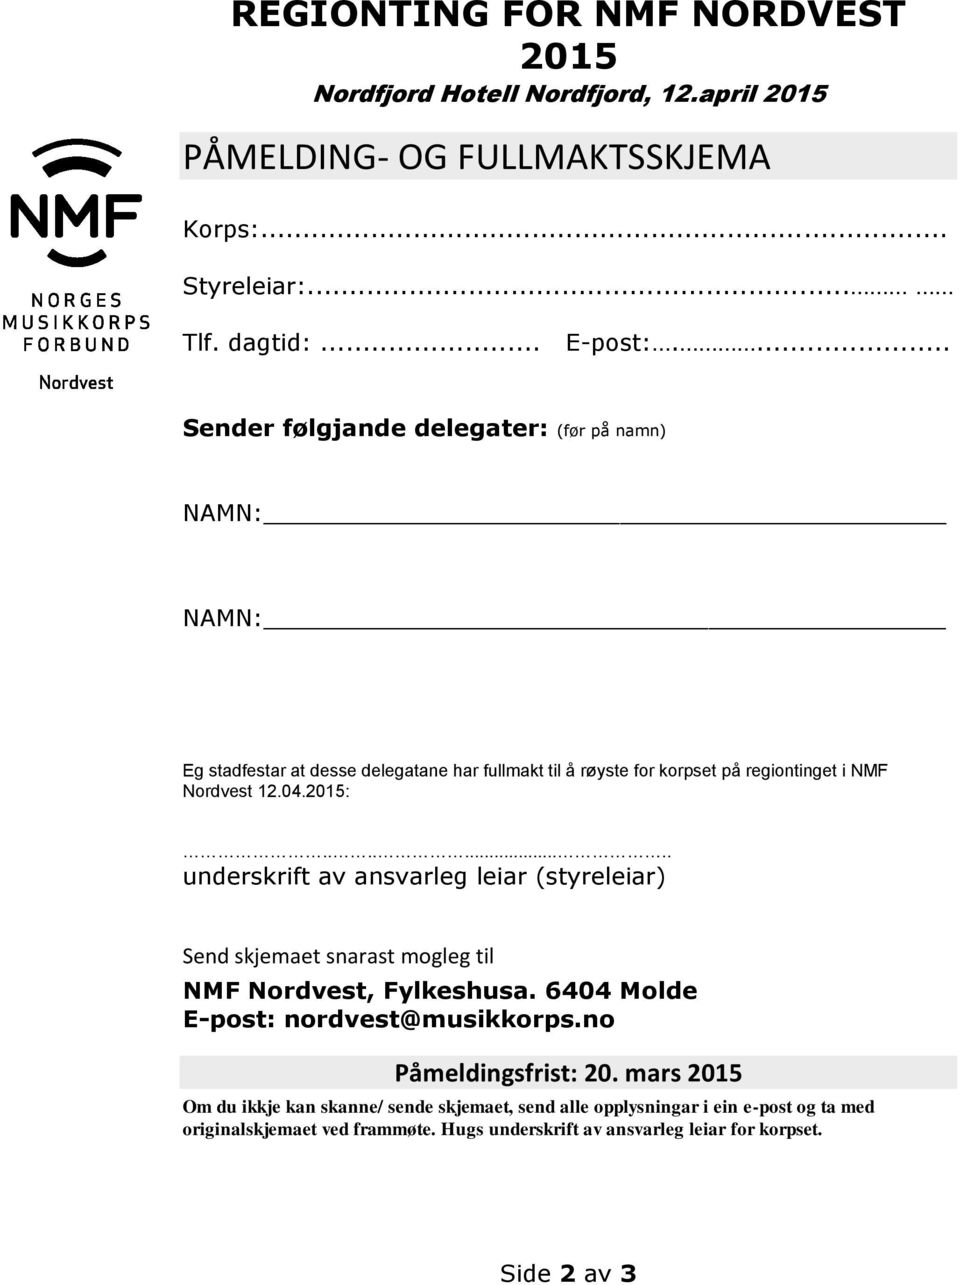 ........ underskrift av ansvarleg leiar (styreleiar) Send skjemaet snarast mogleg til NMF Nordvest, Fylkeshusa. 6404 Molde E-post: nordvest@musikkorps.